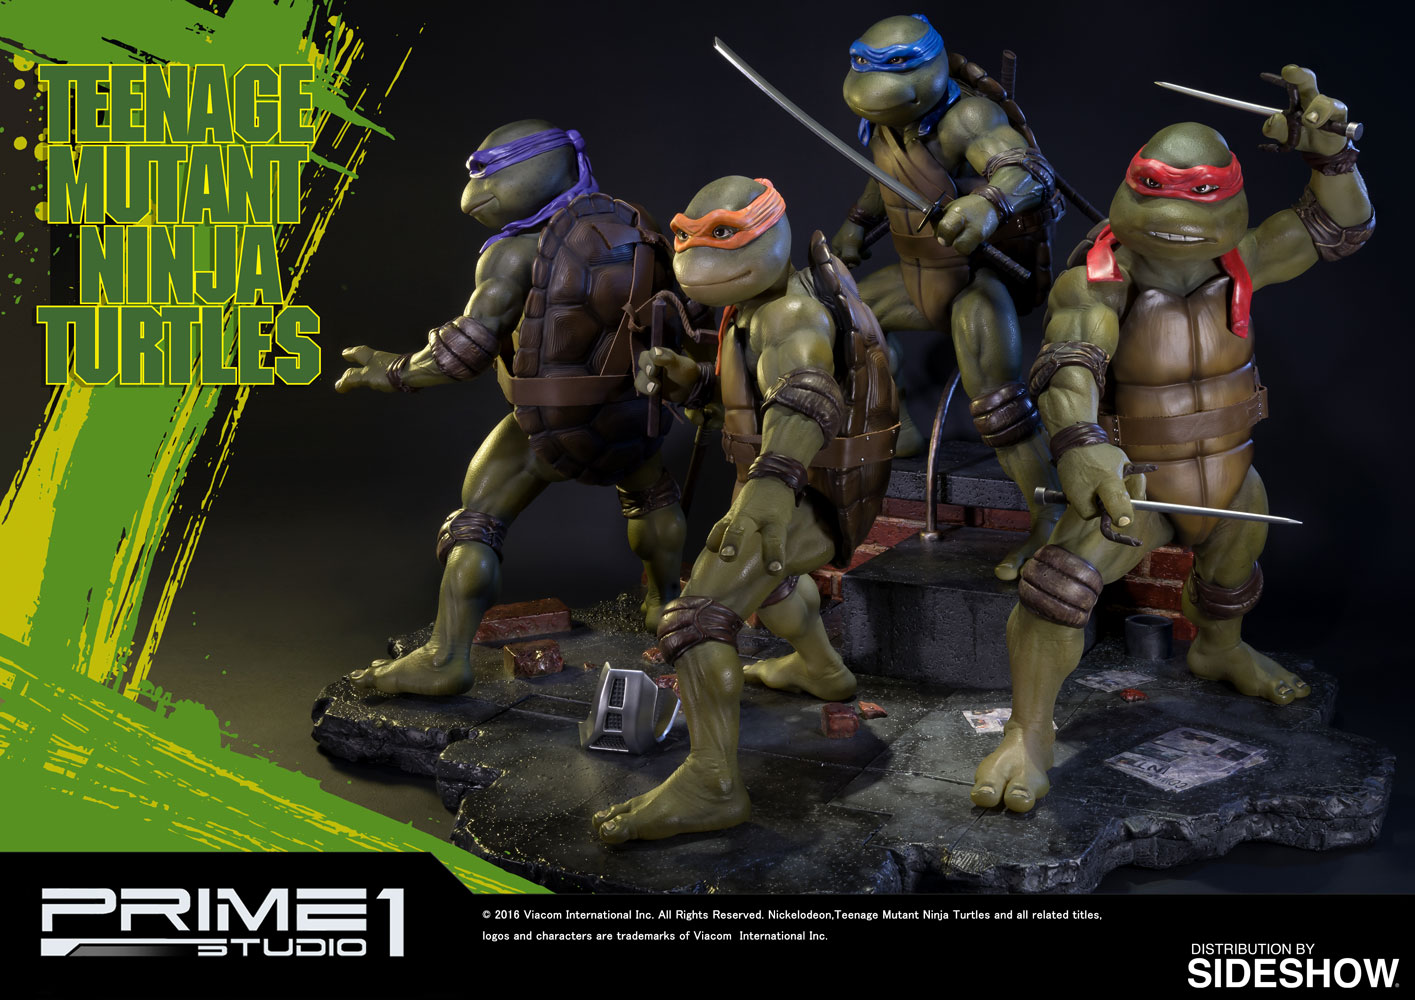 teenage-mutant-ninja-turtle-figure-set-prime-1-902721-02.jpg